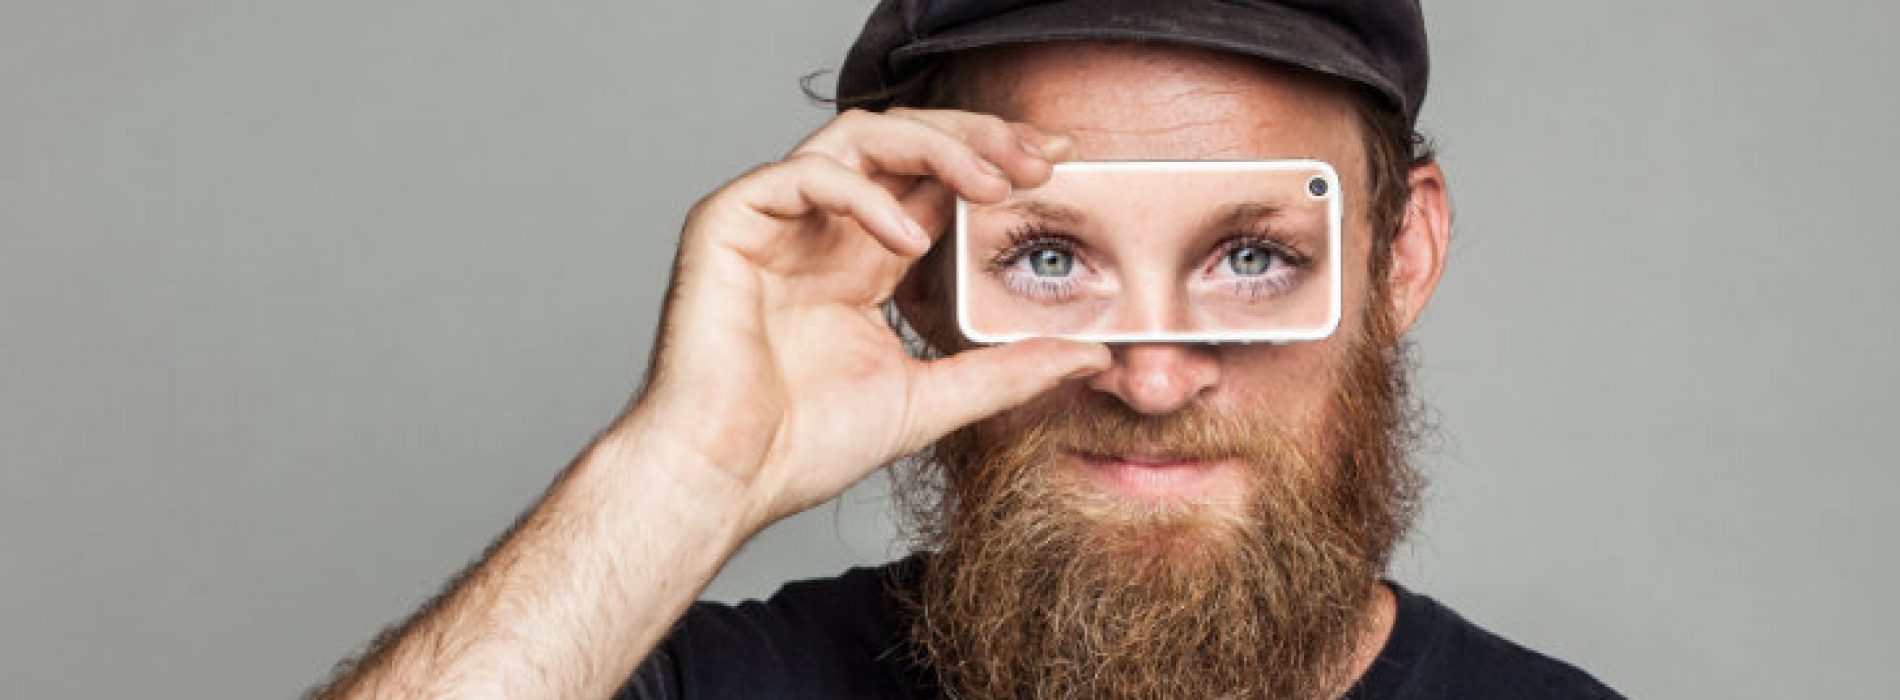 Nieuwe app geeft blinden zicht terug